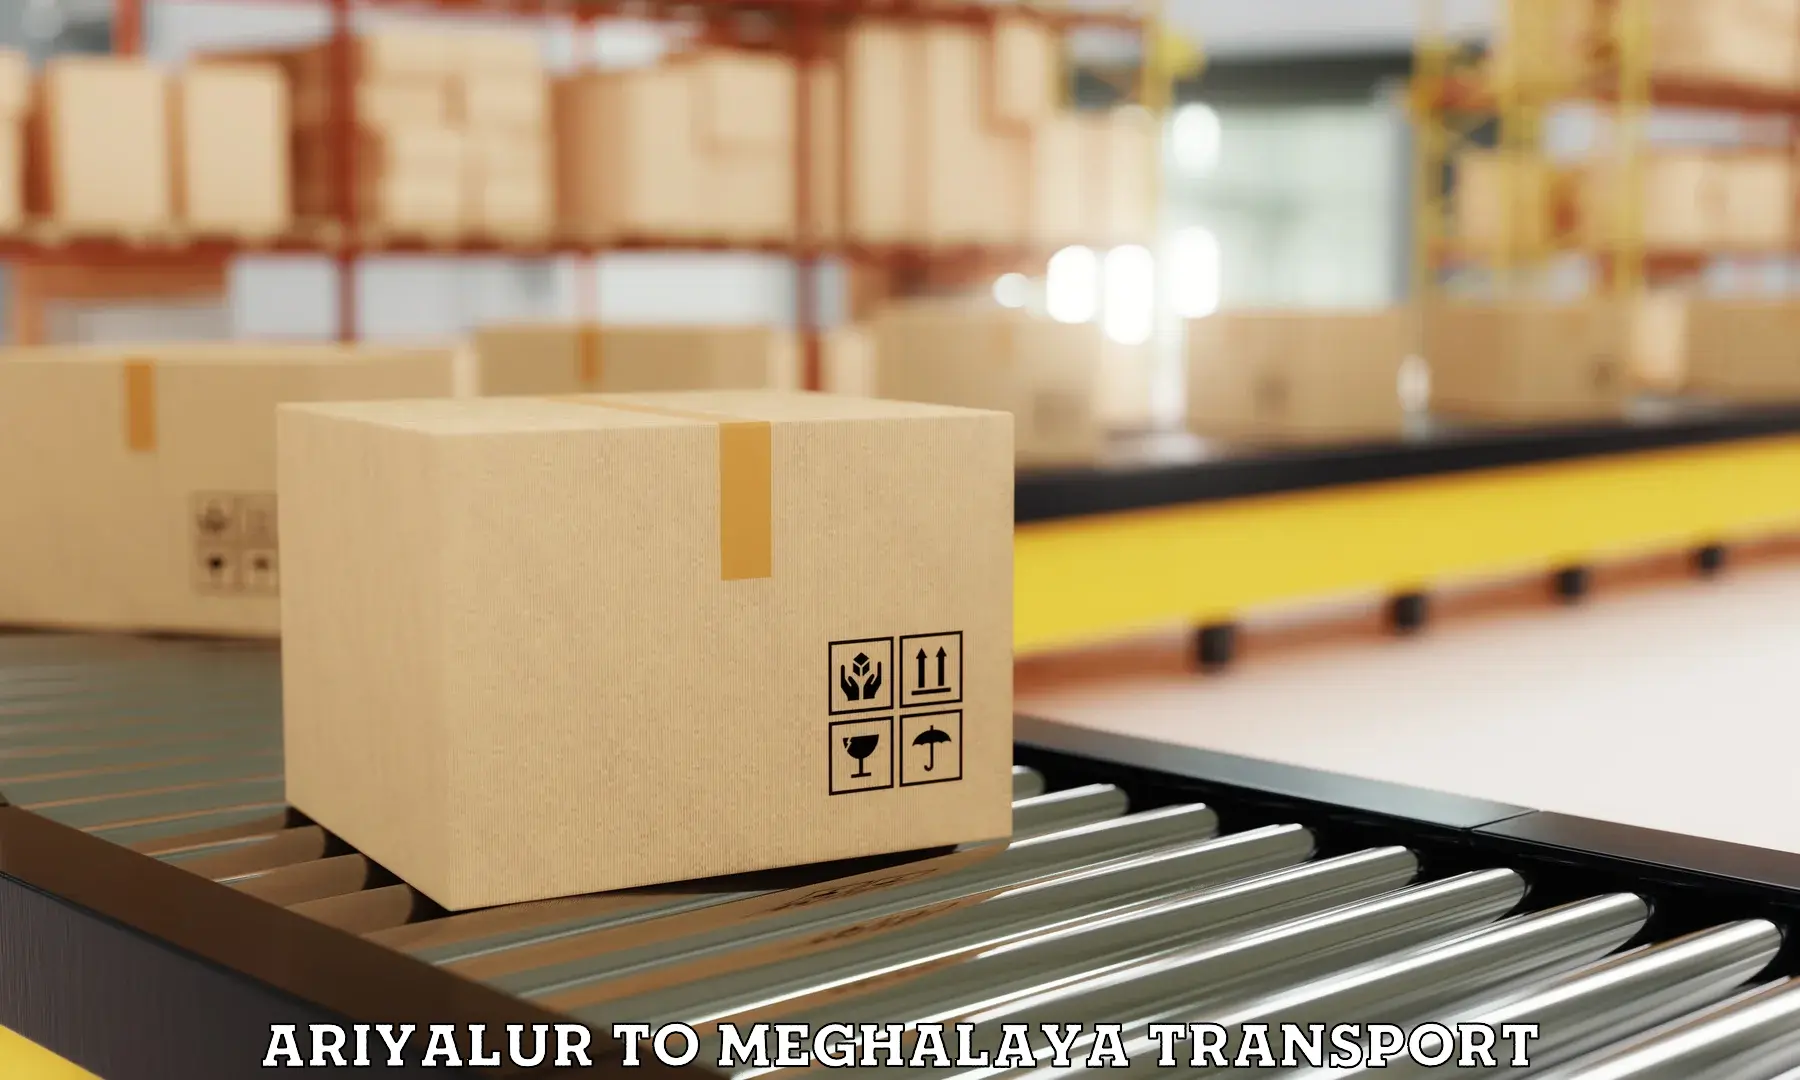 Furniture transport service Ariyalur to Meghalaya